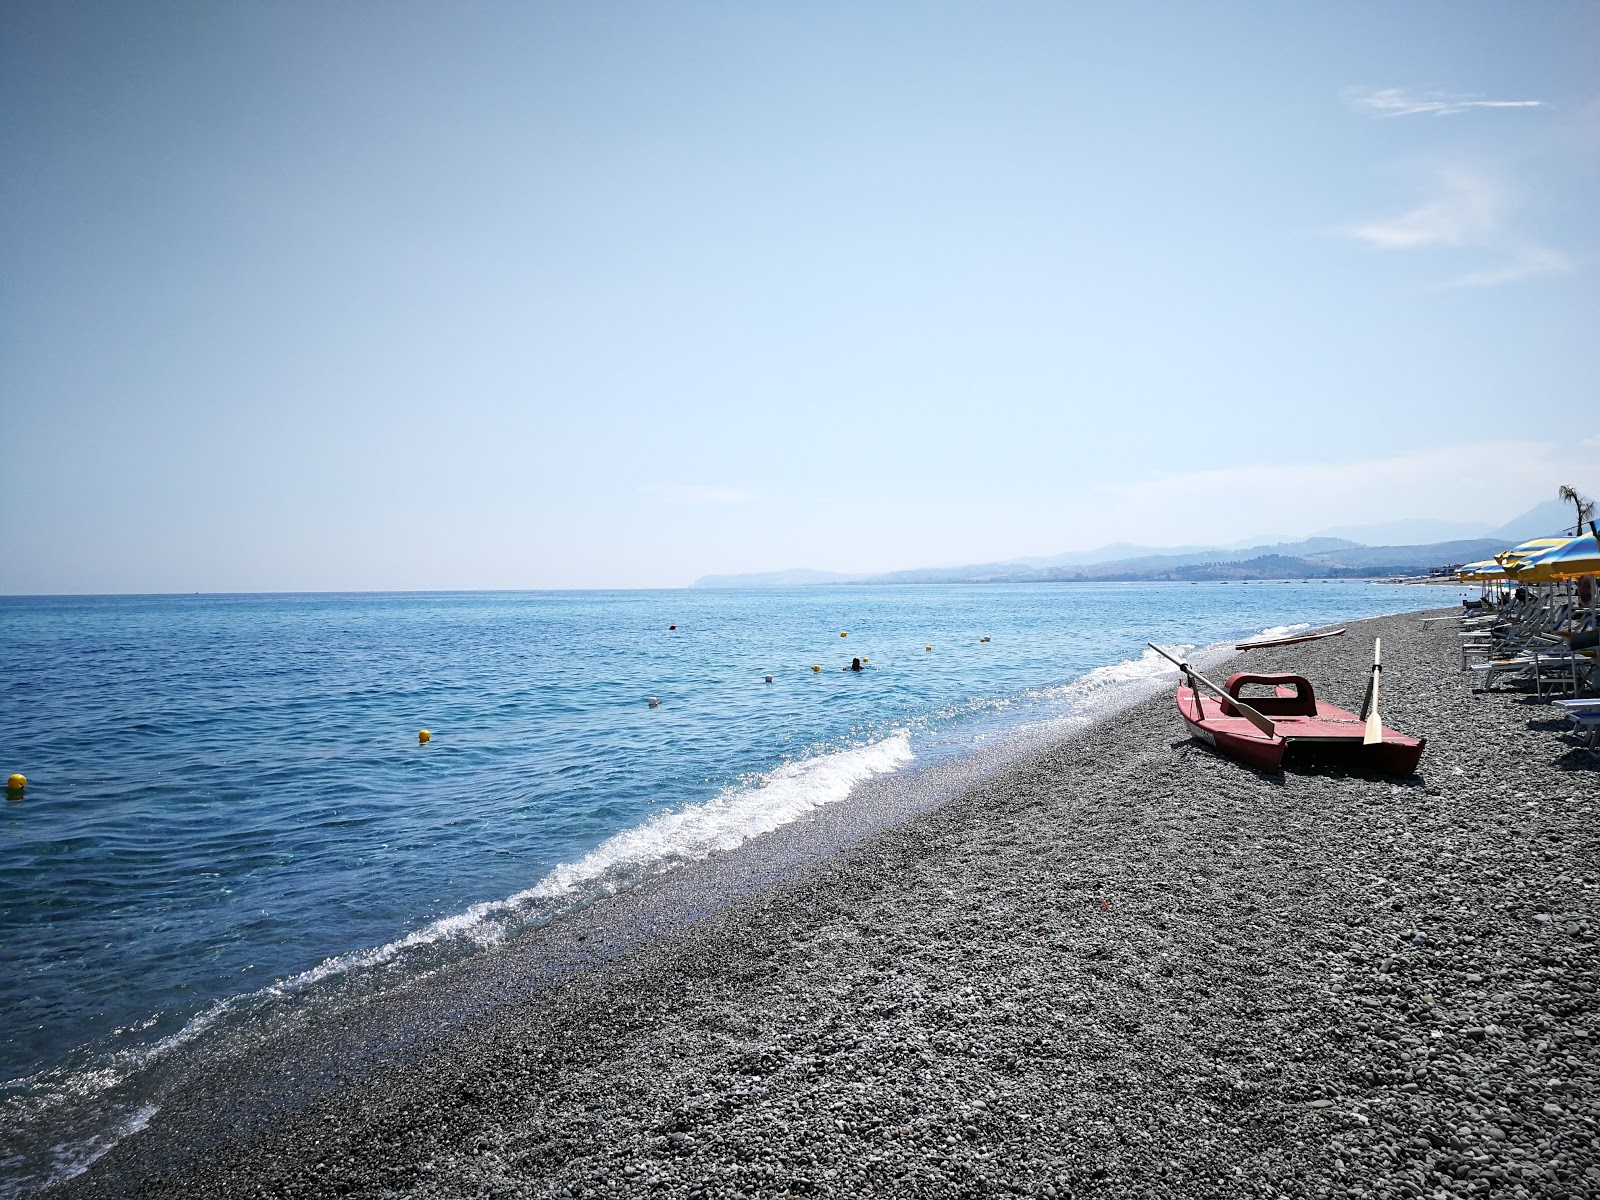 Zdjęcie Bovalino Marina beach z powierzchnią niebieska woda